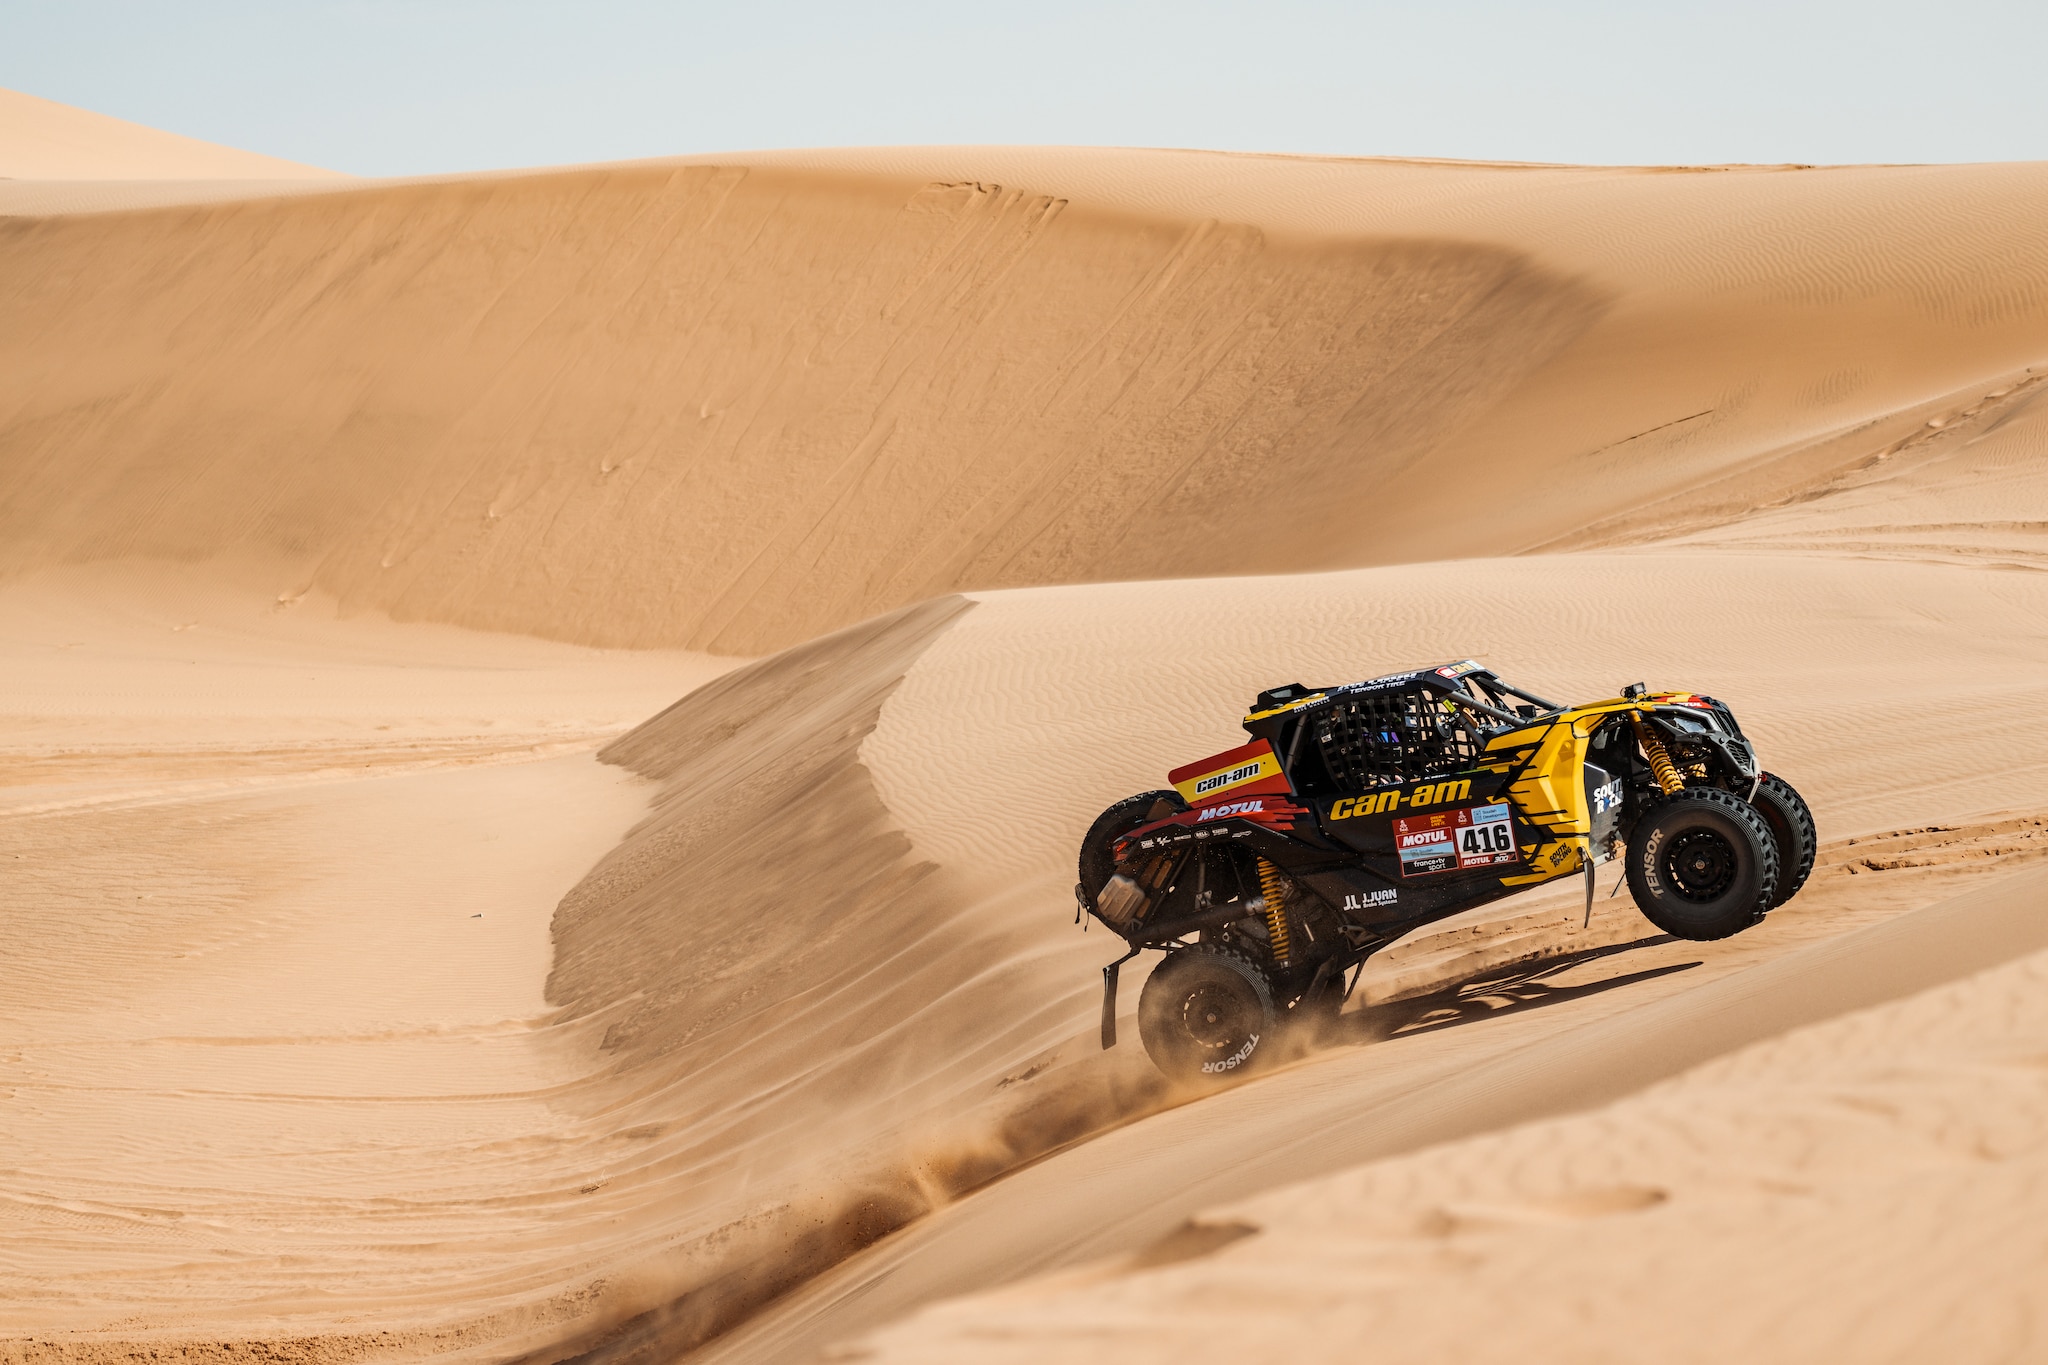 Maverick riding on a sand dune in the desert